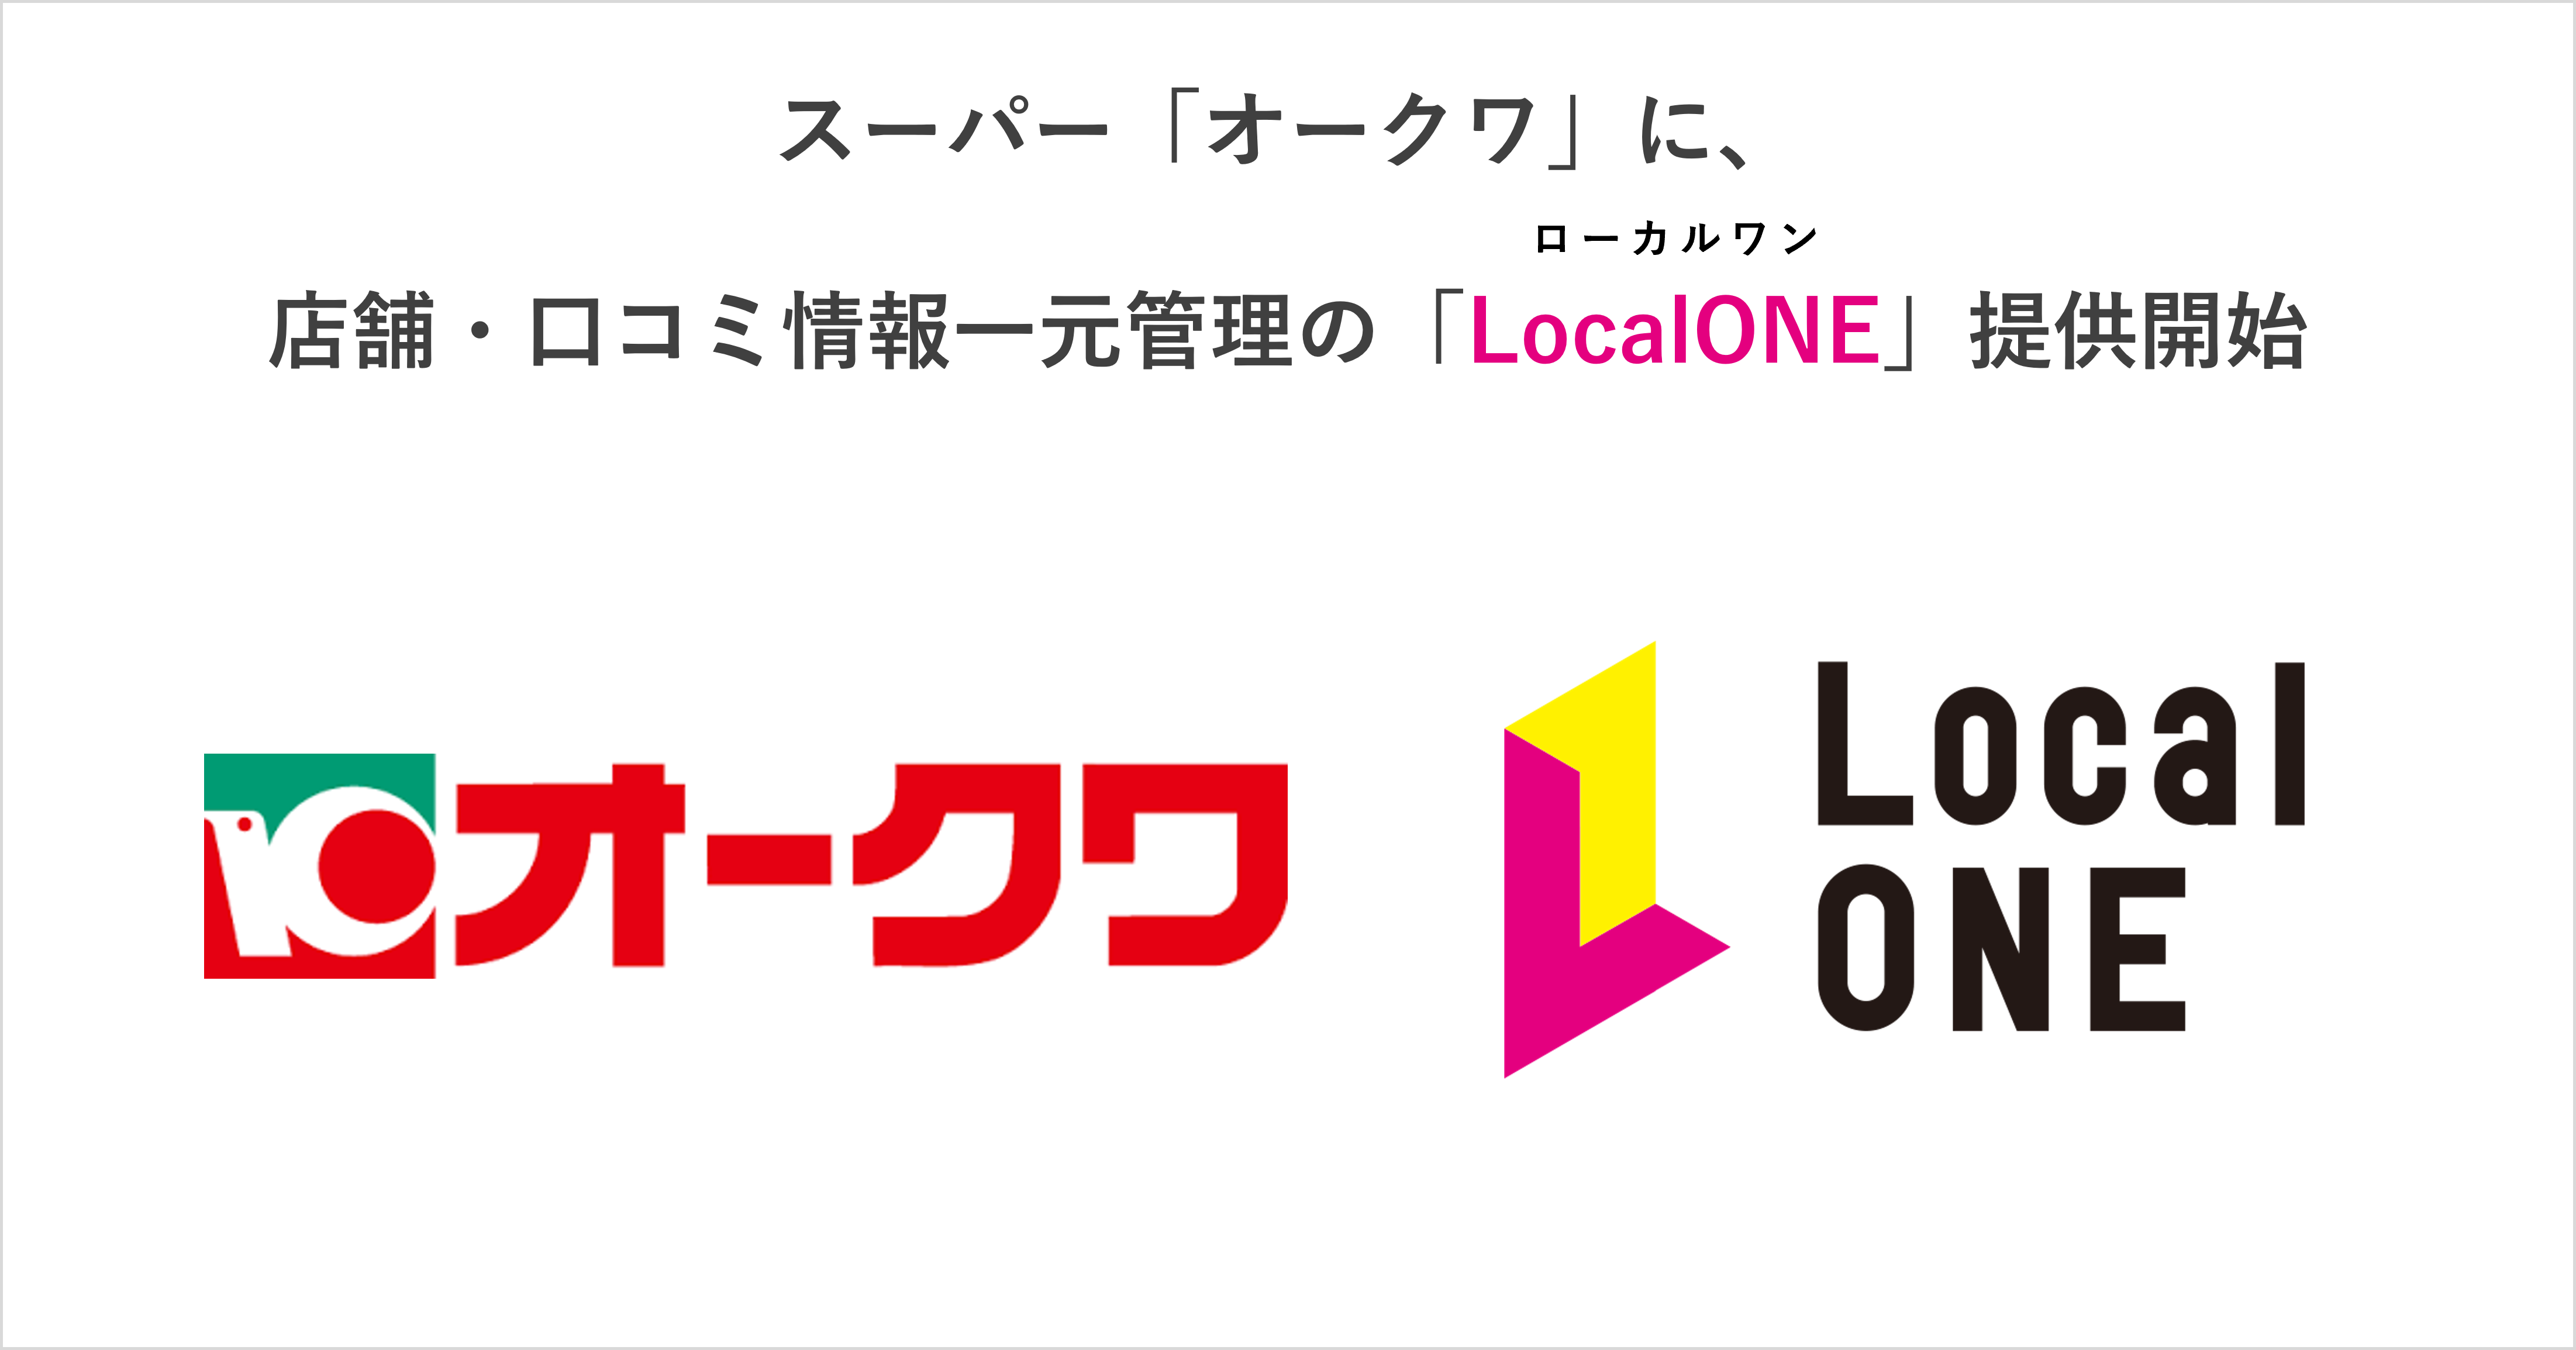 スーパー「オークワ」に店舗・口コミ情報一元管理「LocalONE」提供開始